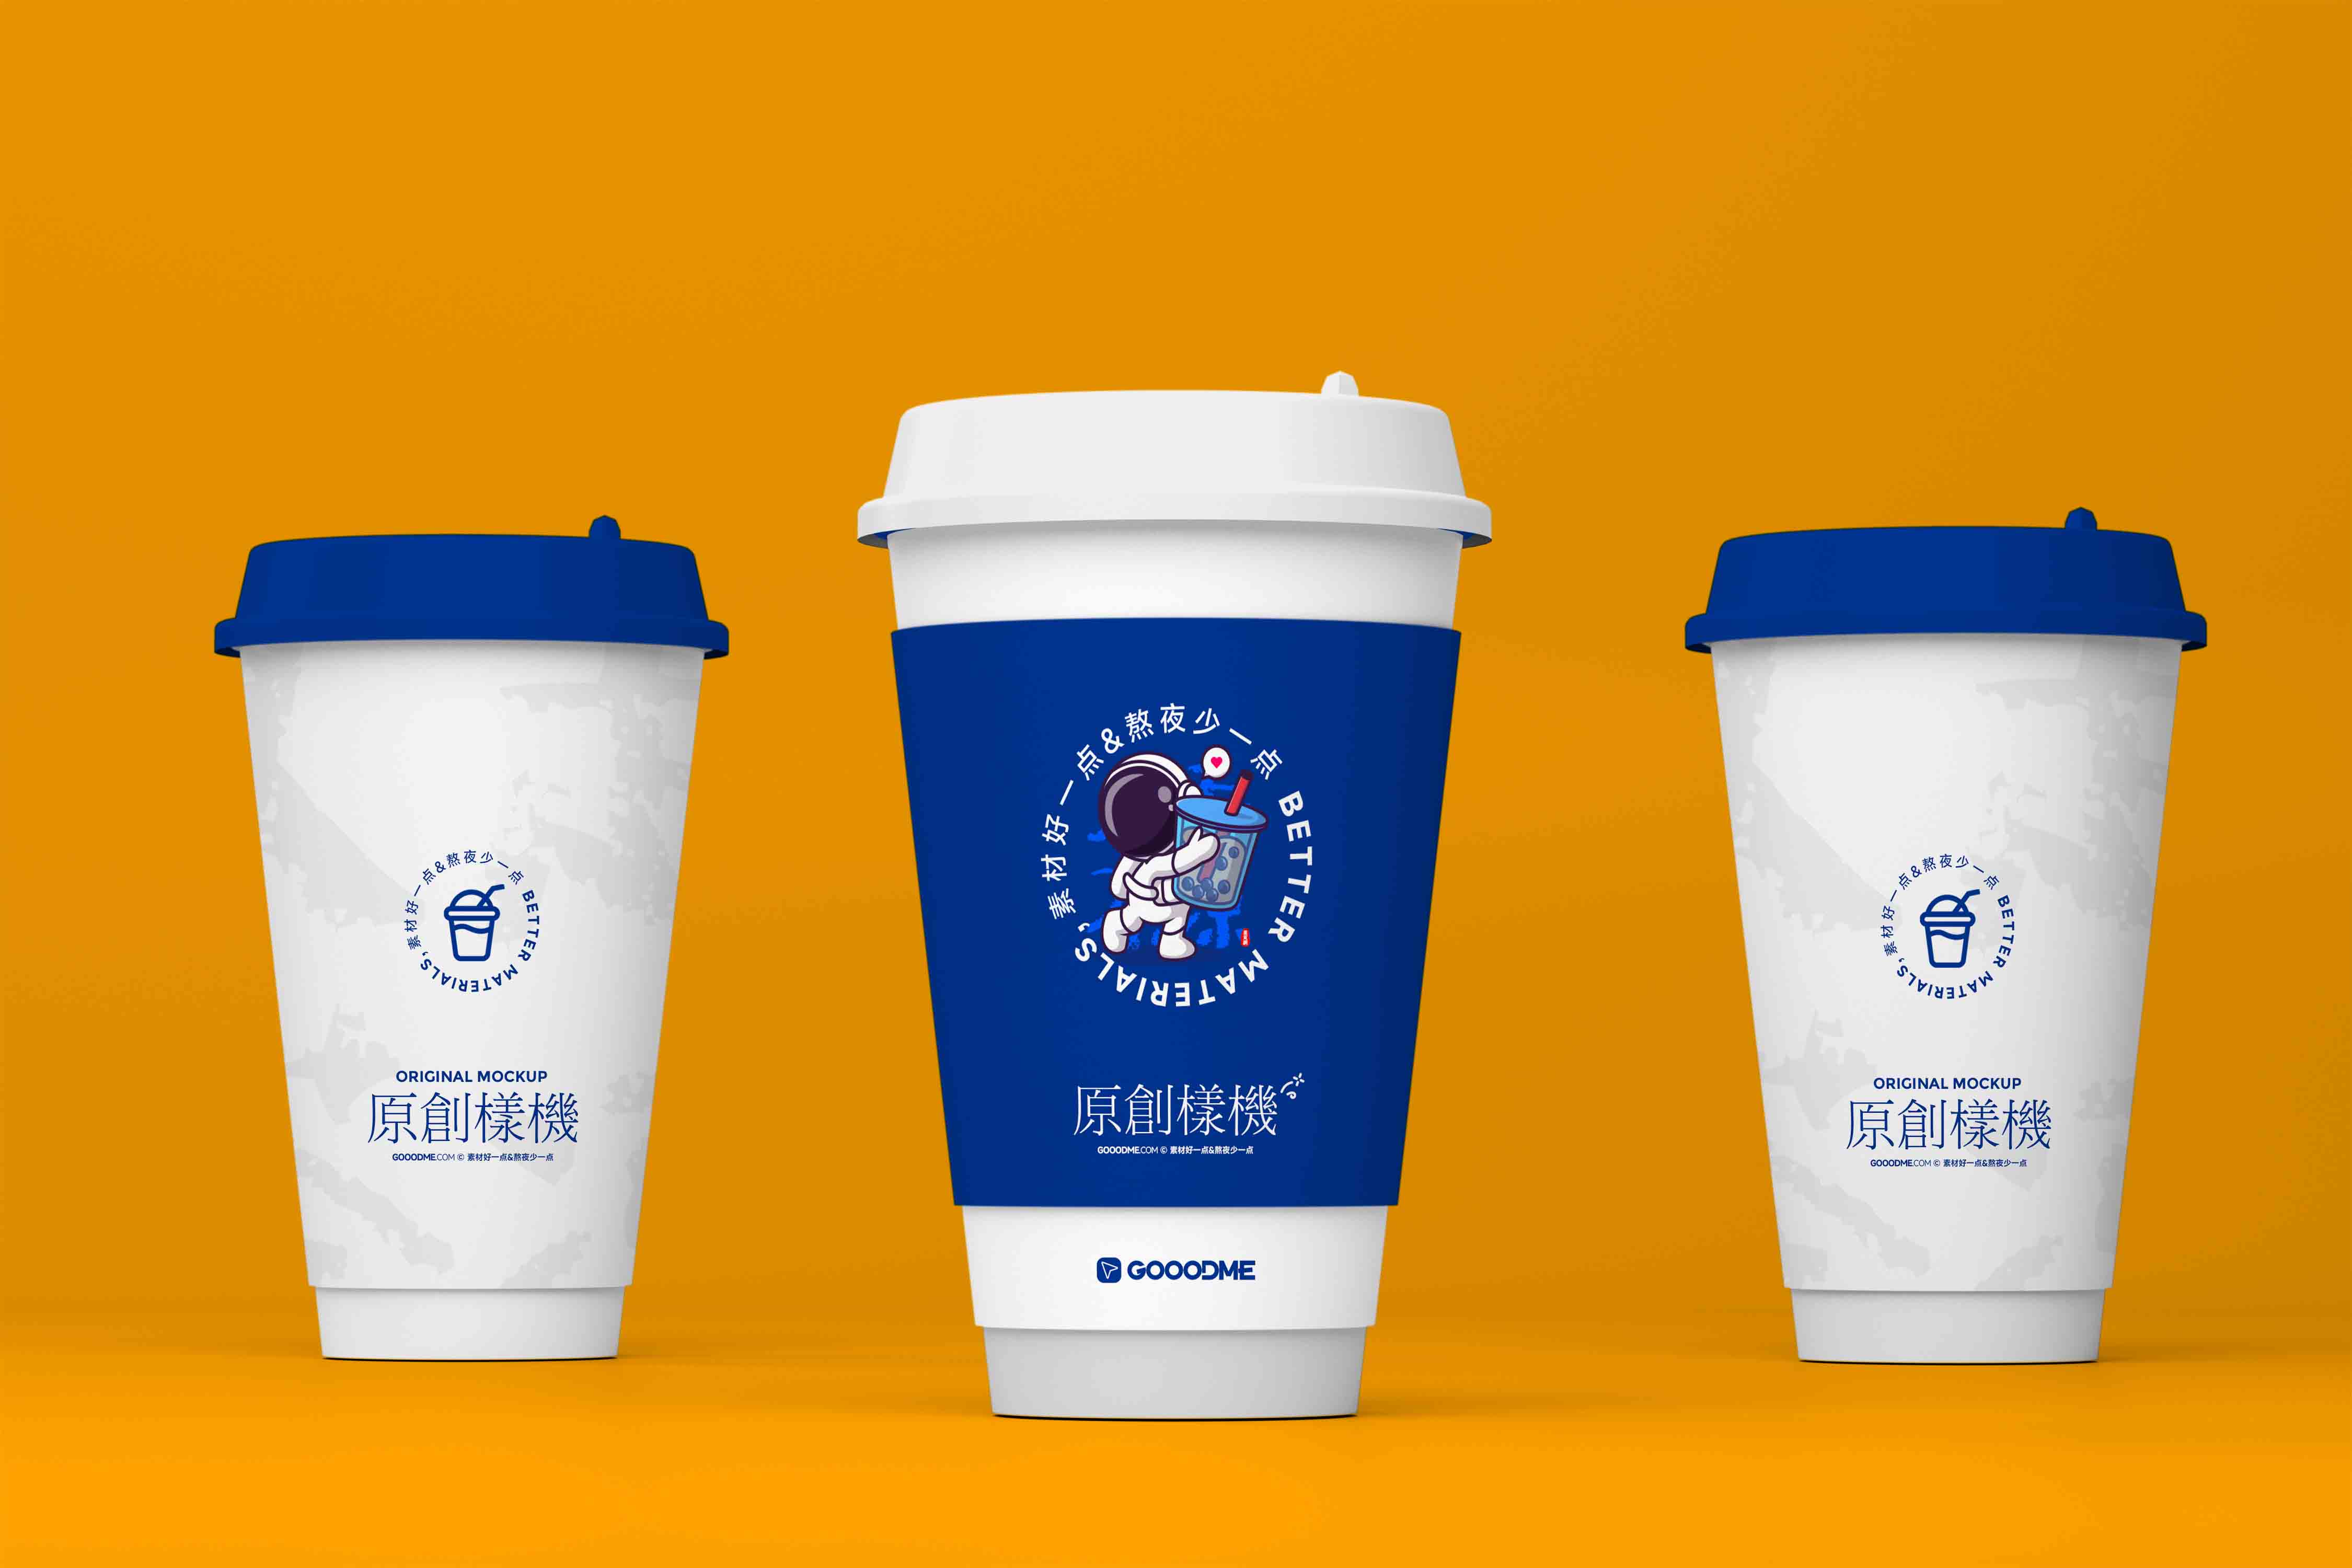 4247 10款原创咖啡奶茶品牌场景组合会员可商用样机模板@GOOODME.COM